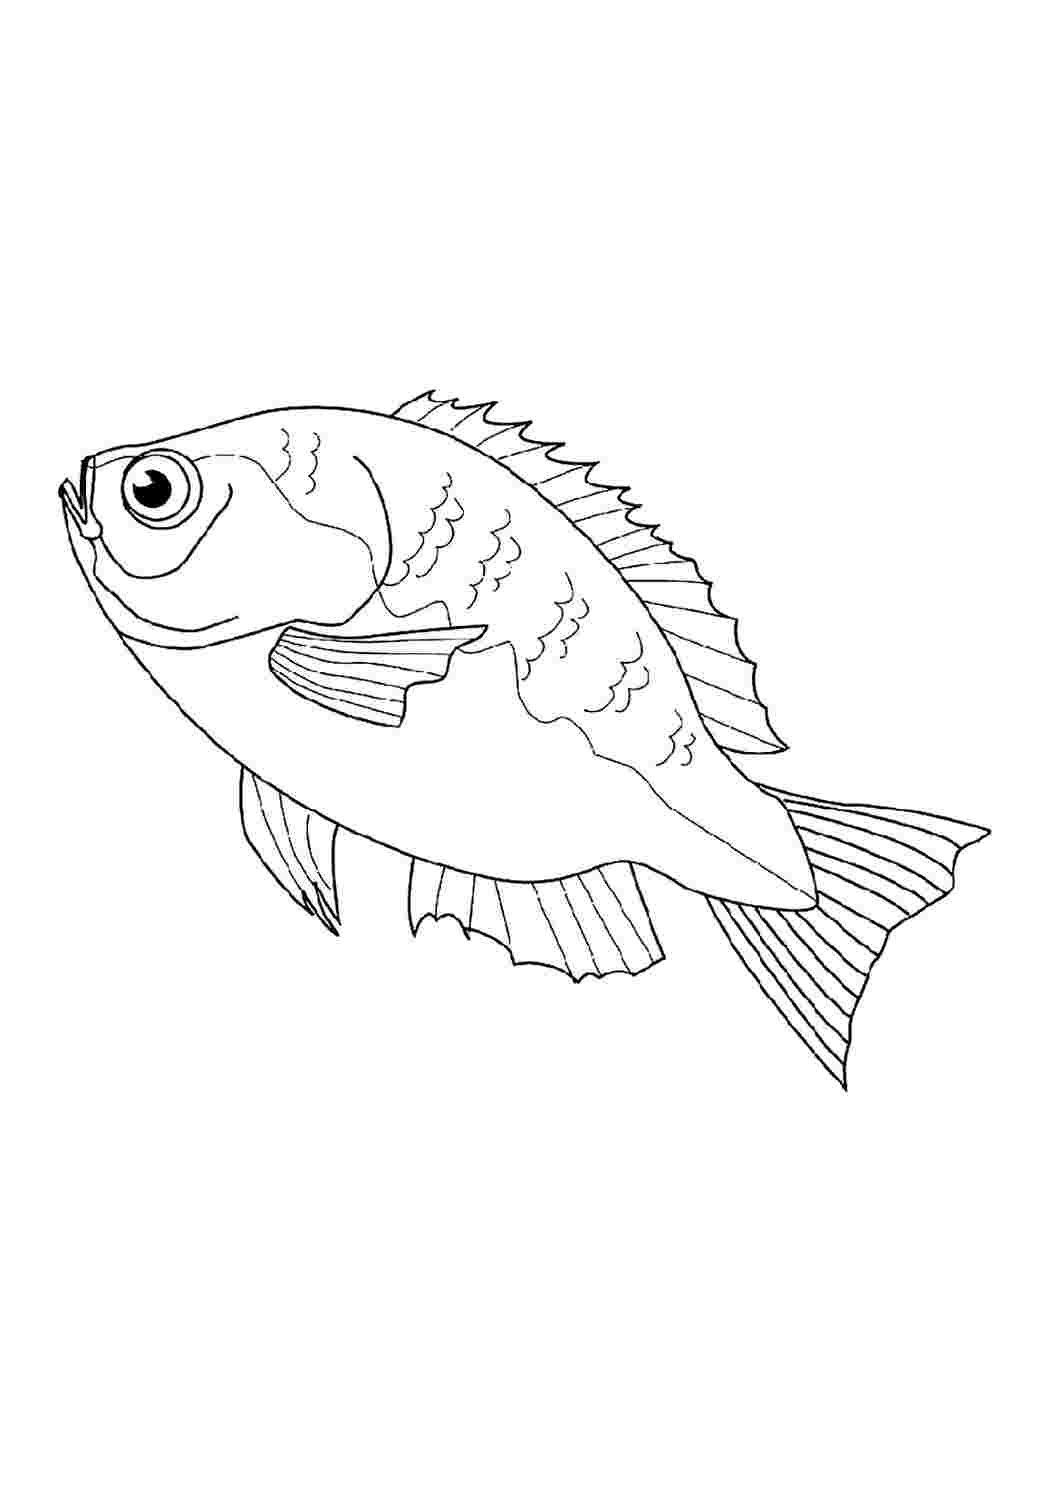 Раскраски рыб | Раскраски, Черно-белое, Картинки